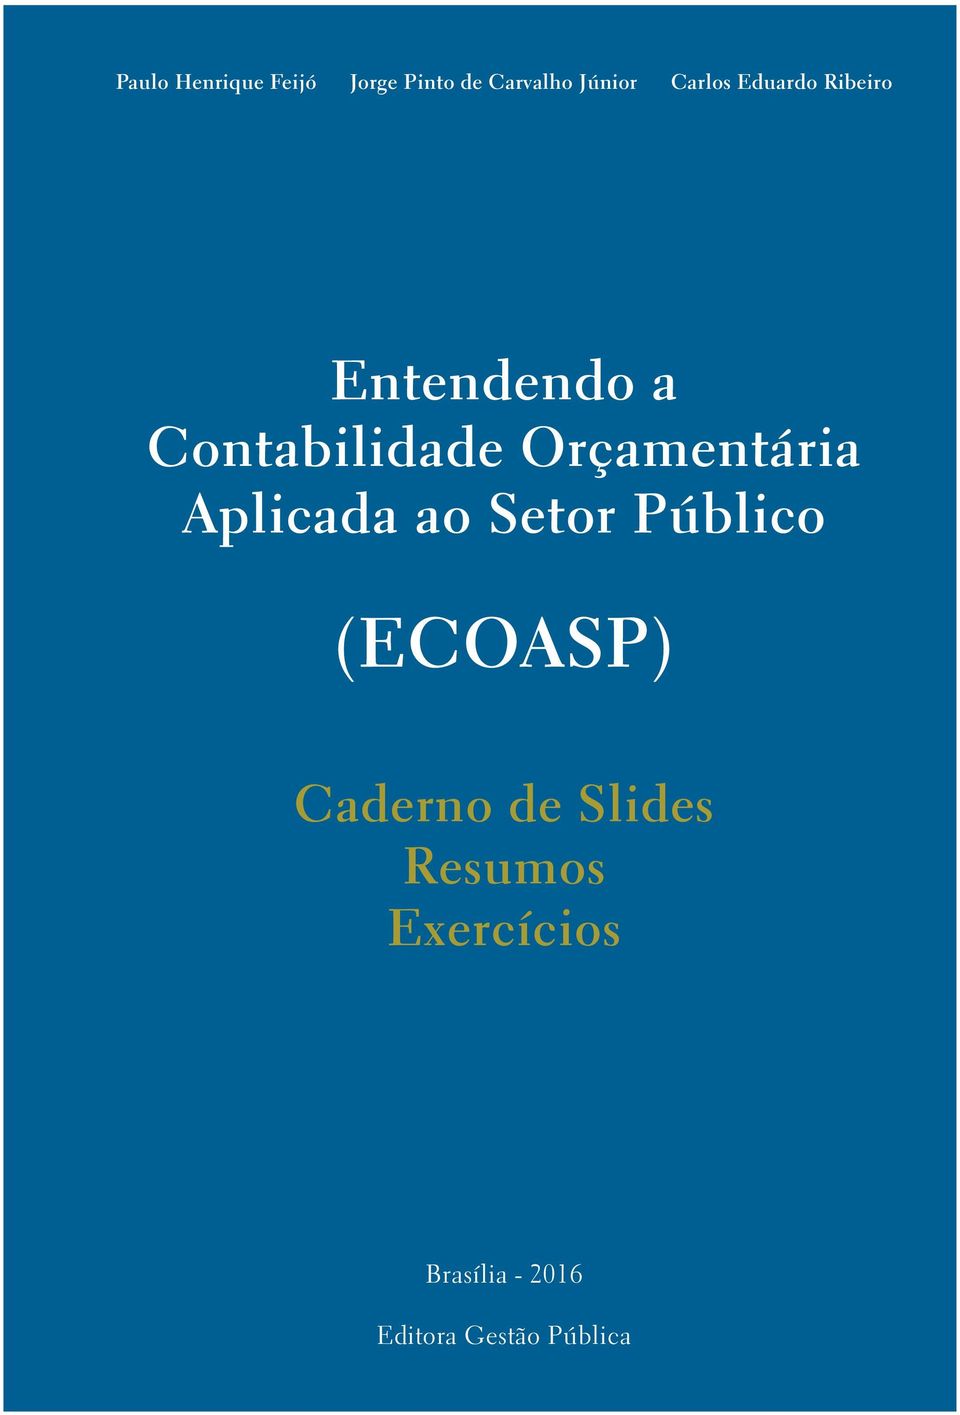 Orçamentária Aplicada ao Setor Público (ECOASP) Caderno